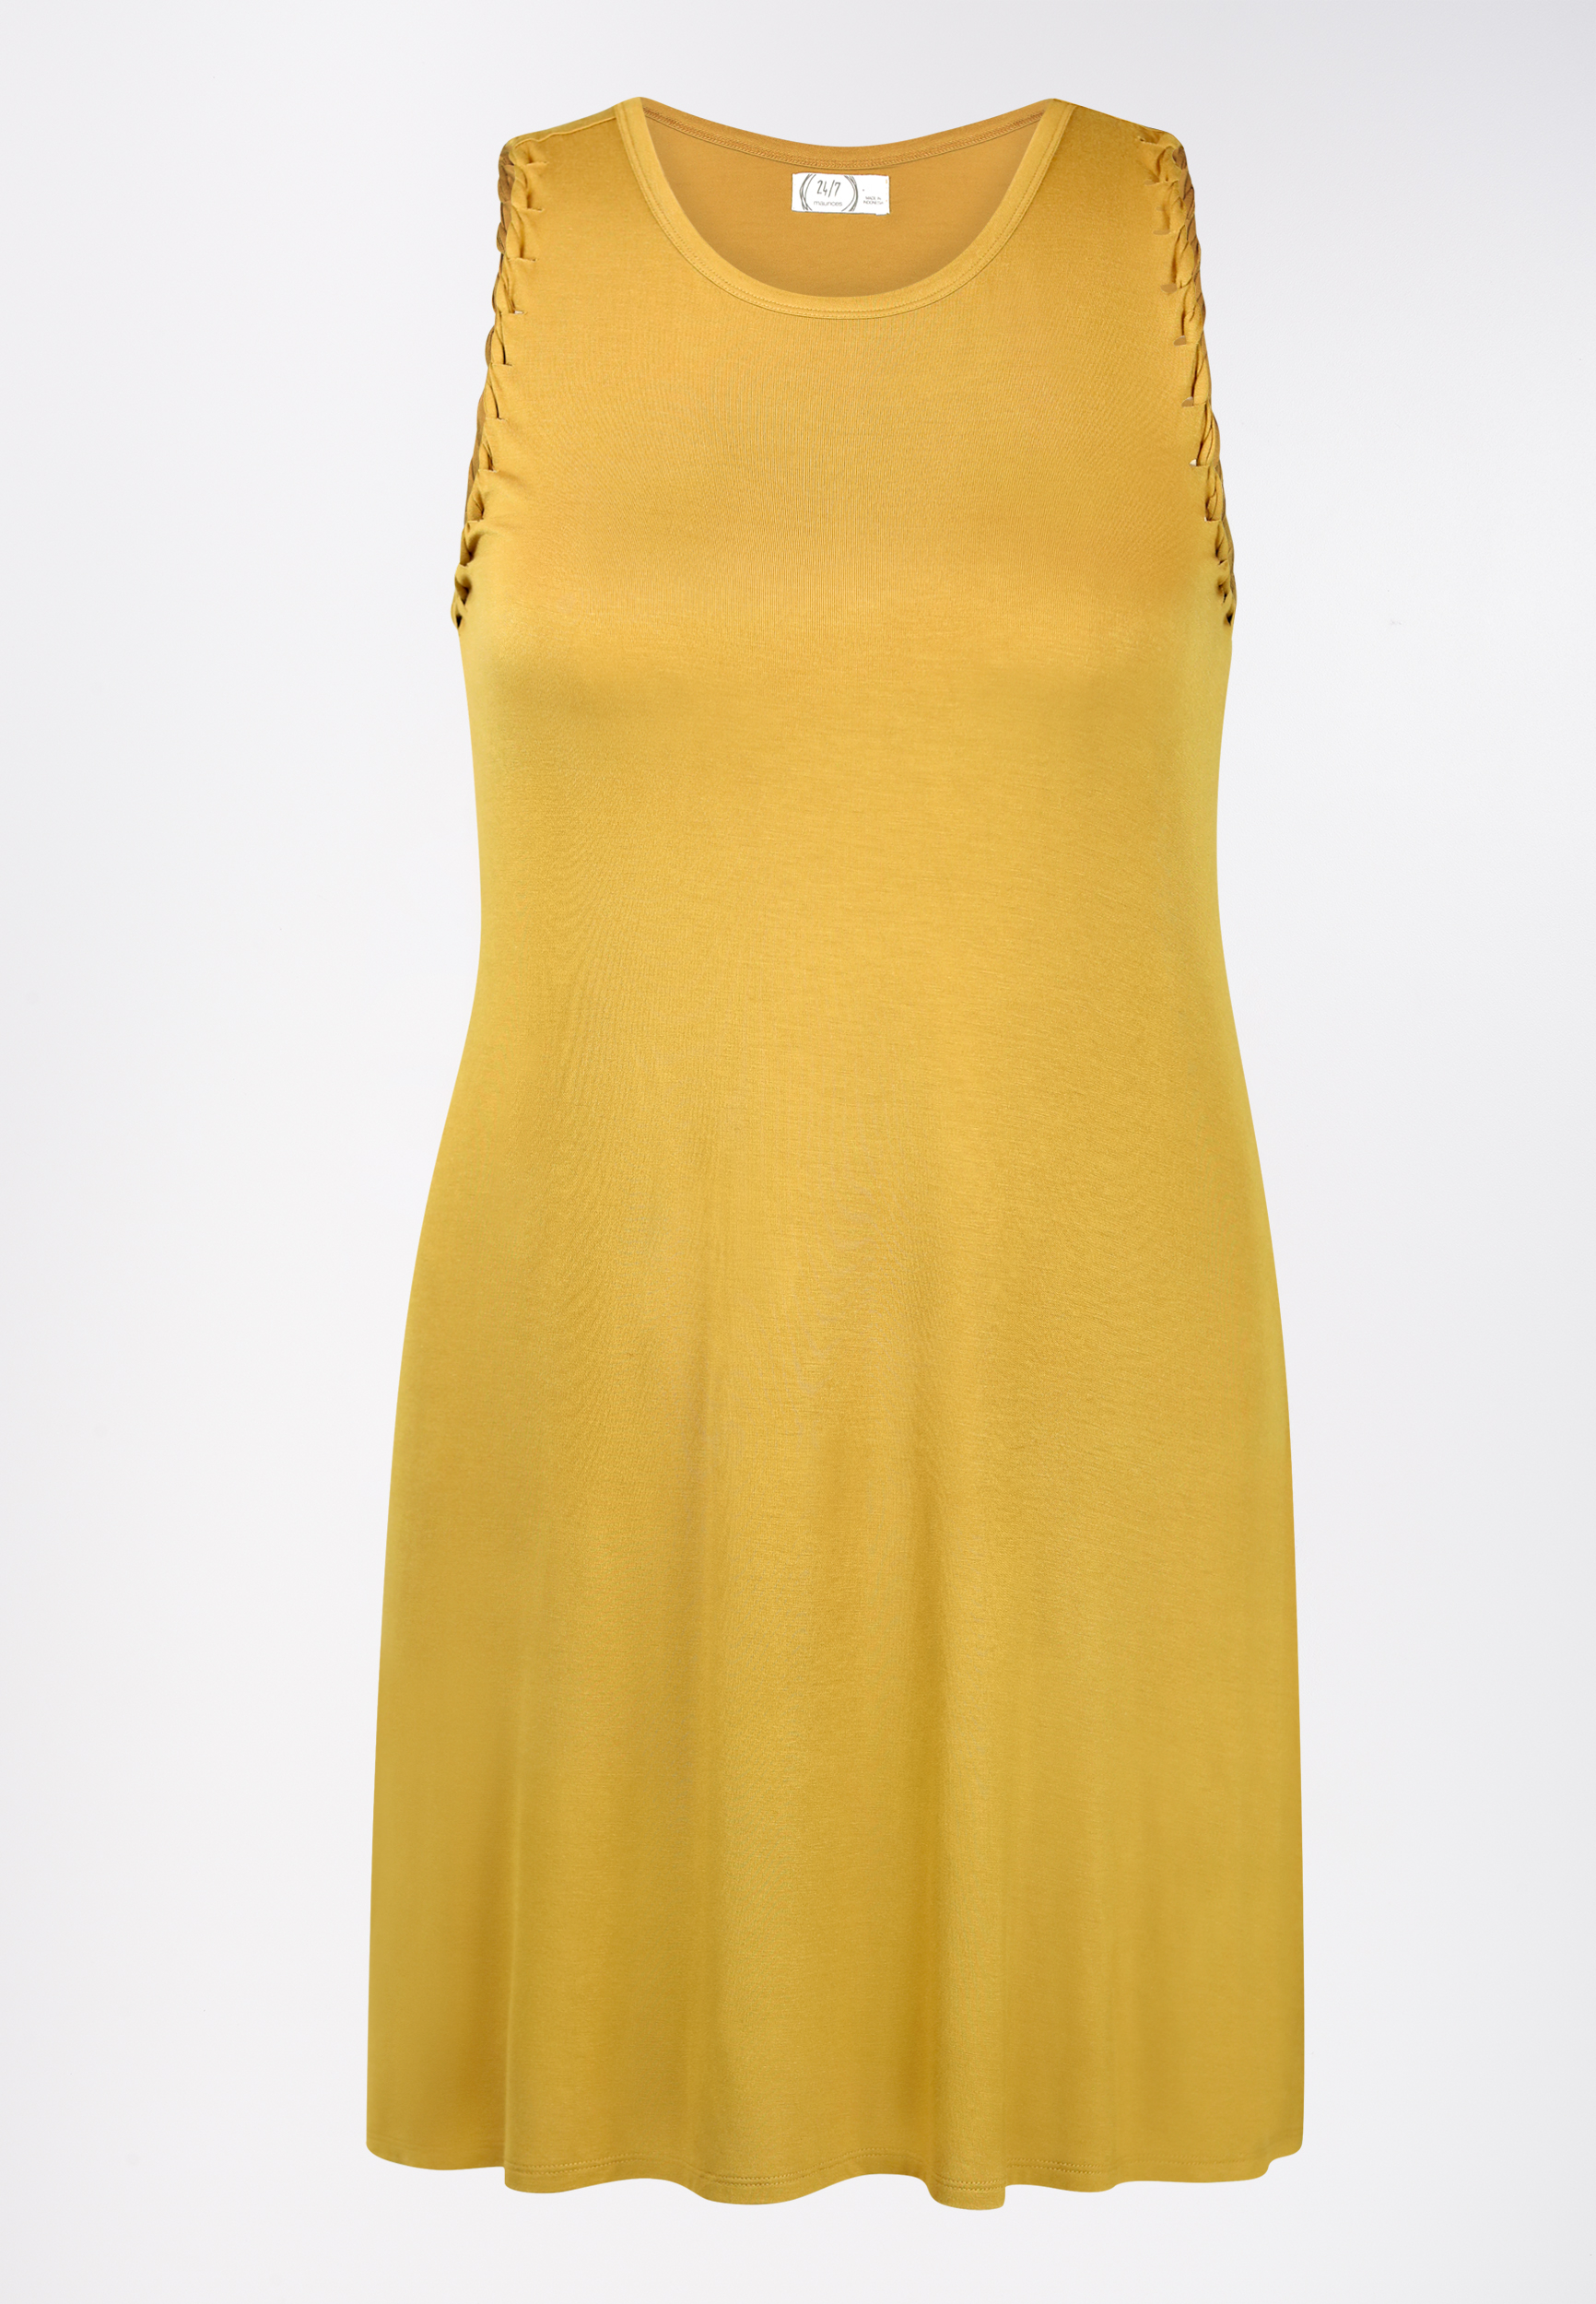 yellow dress size 24